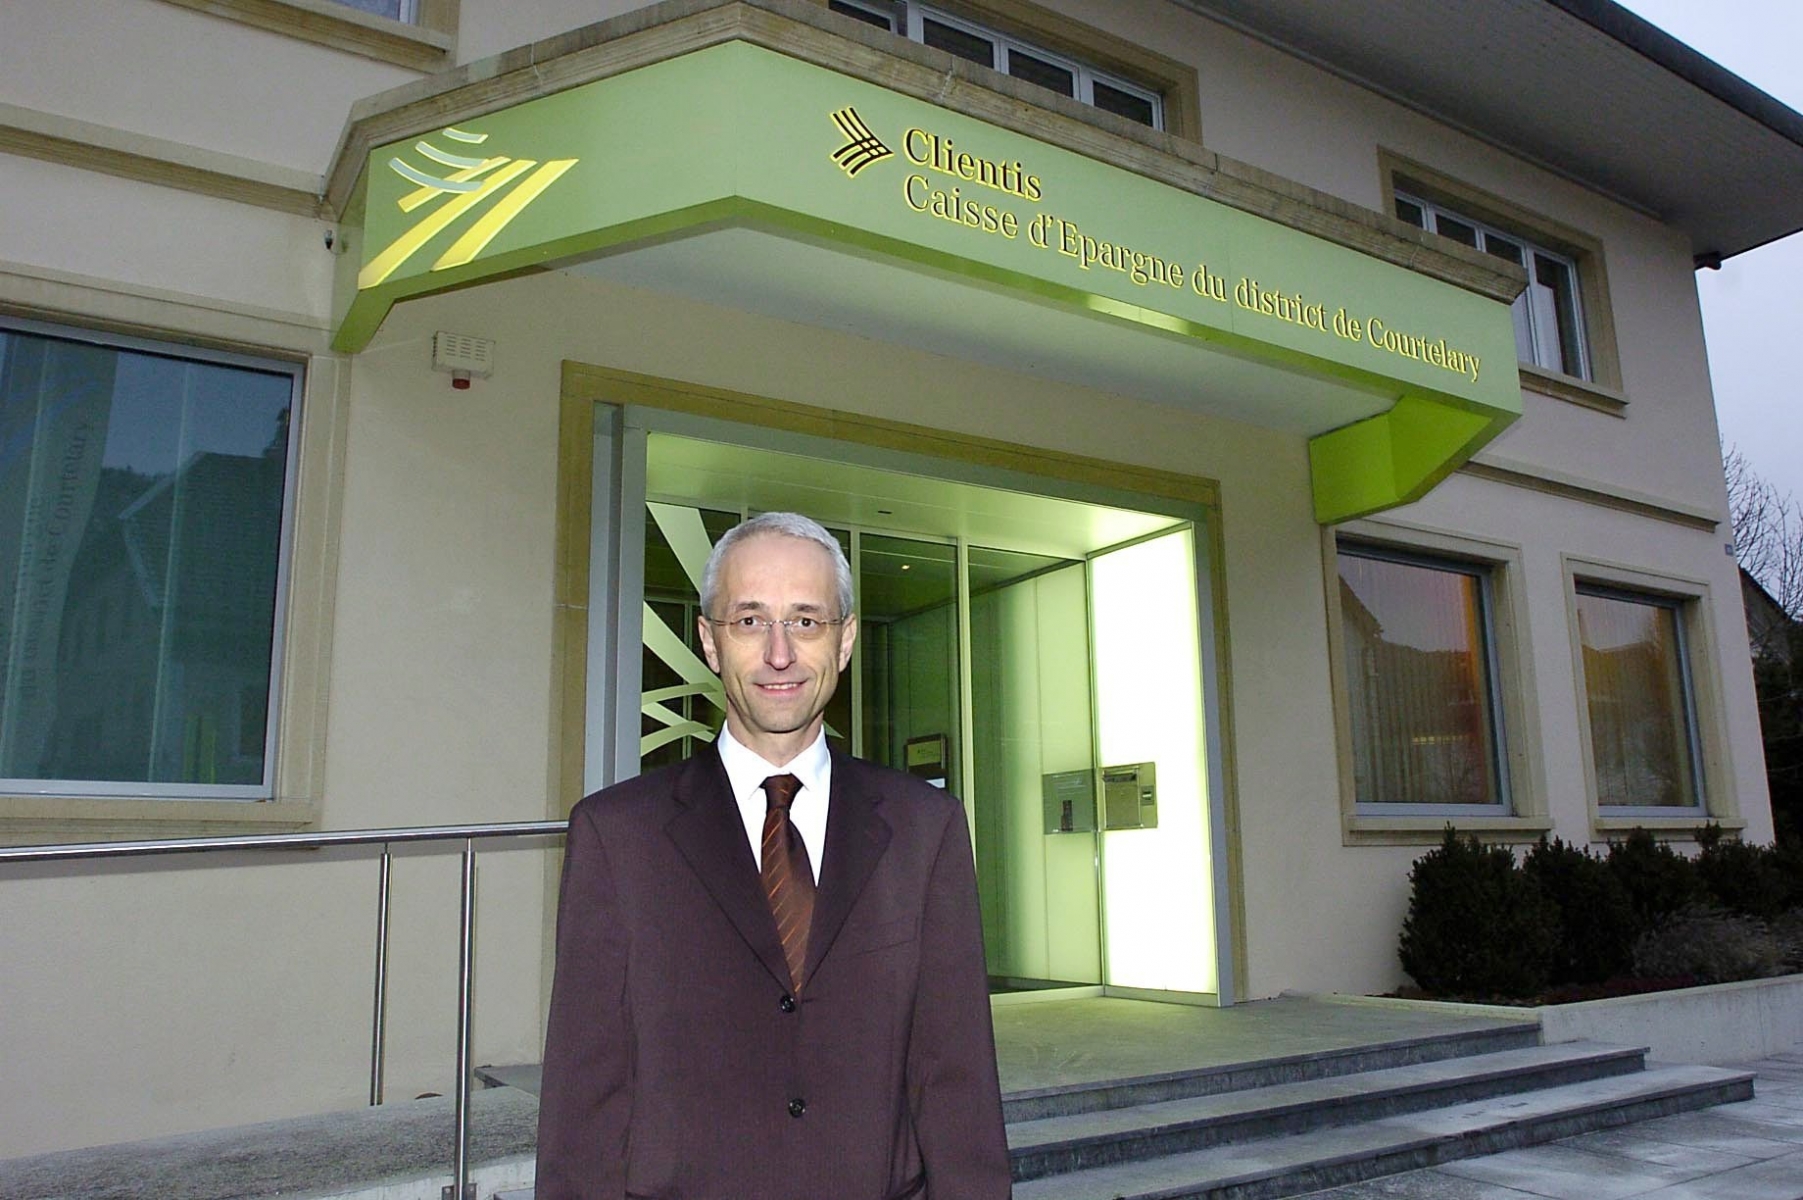 Daniel Perret-Gentil, directeur de la Clientis Caisse d'epargne du district de Courtelary (CEC).